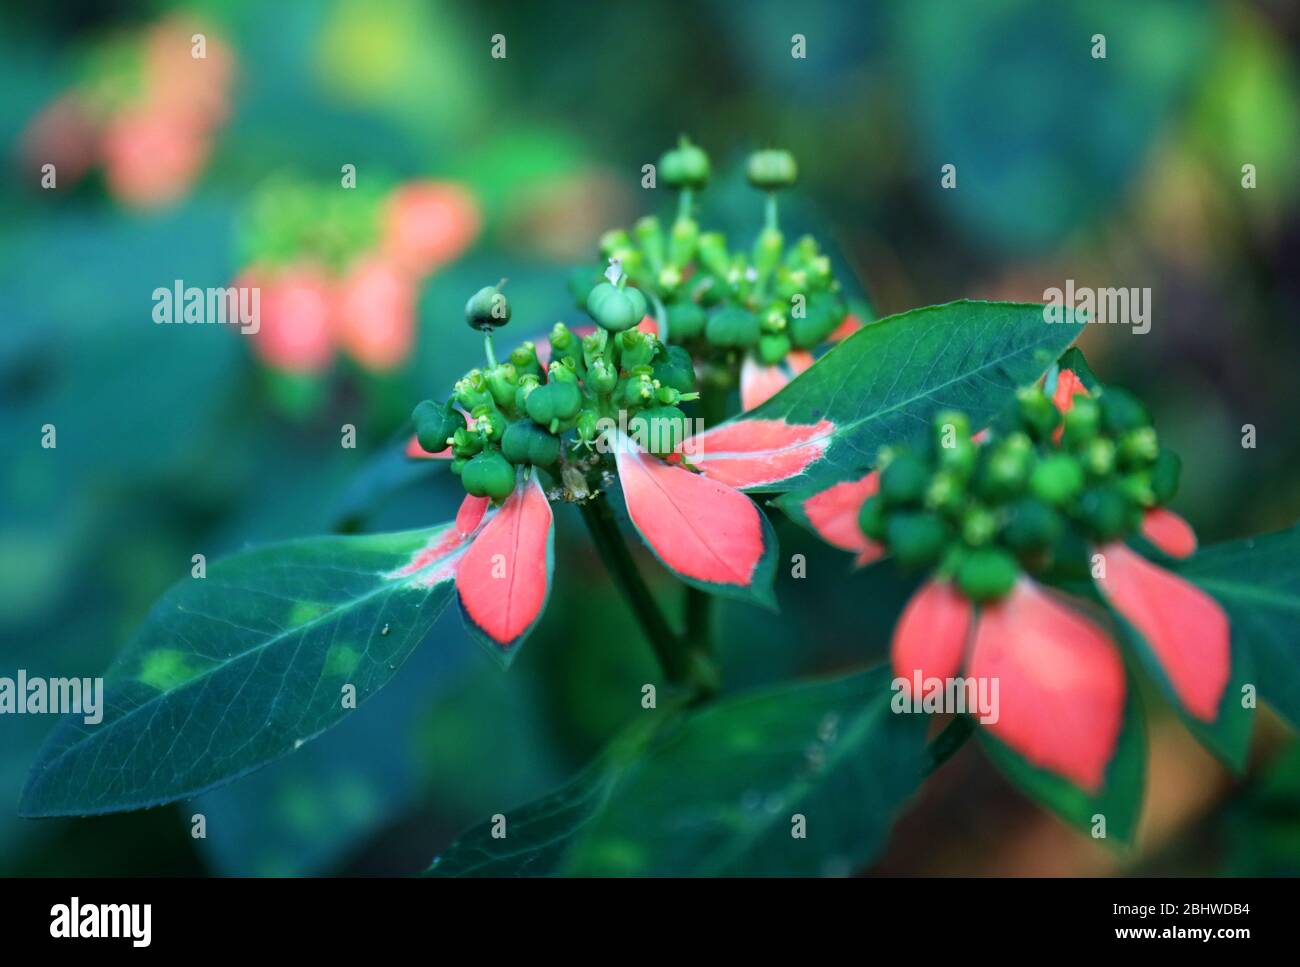 Nature : de belles fleurs se rapprochés en couleurs vives prises en macro. Dehors dans le jardin, un matin chaud. Banque D'Images